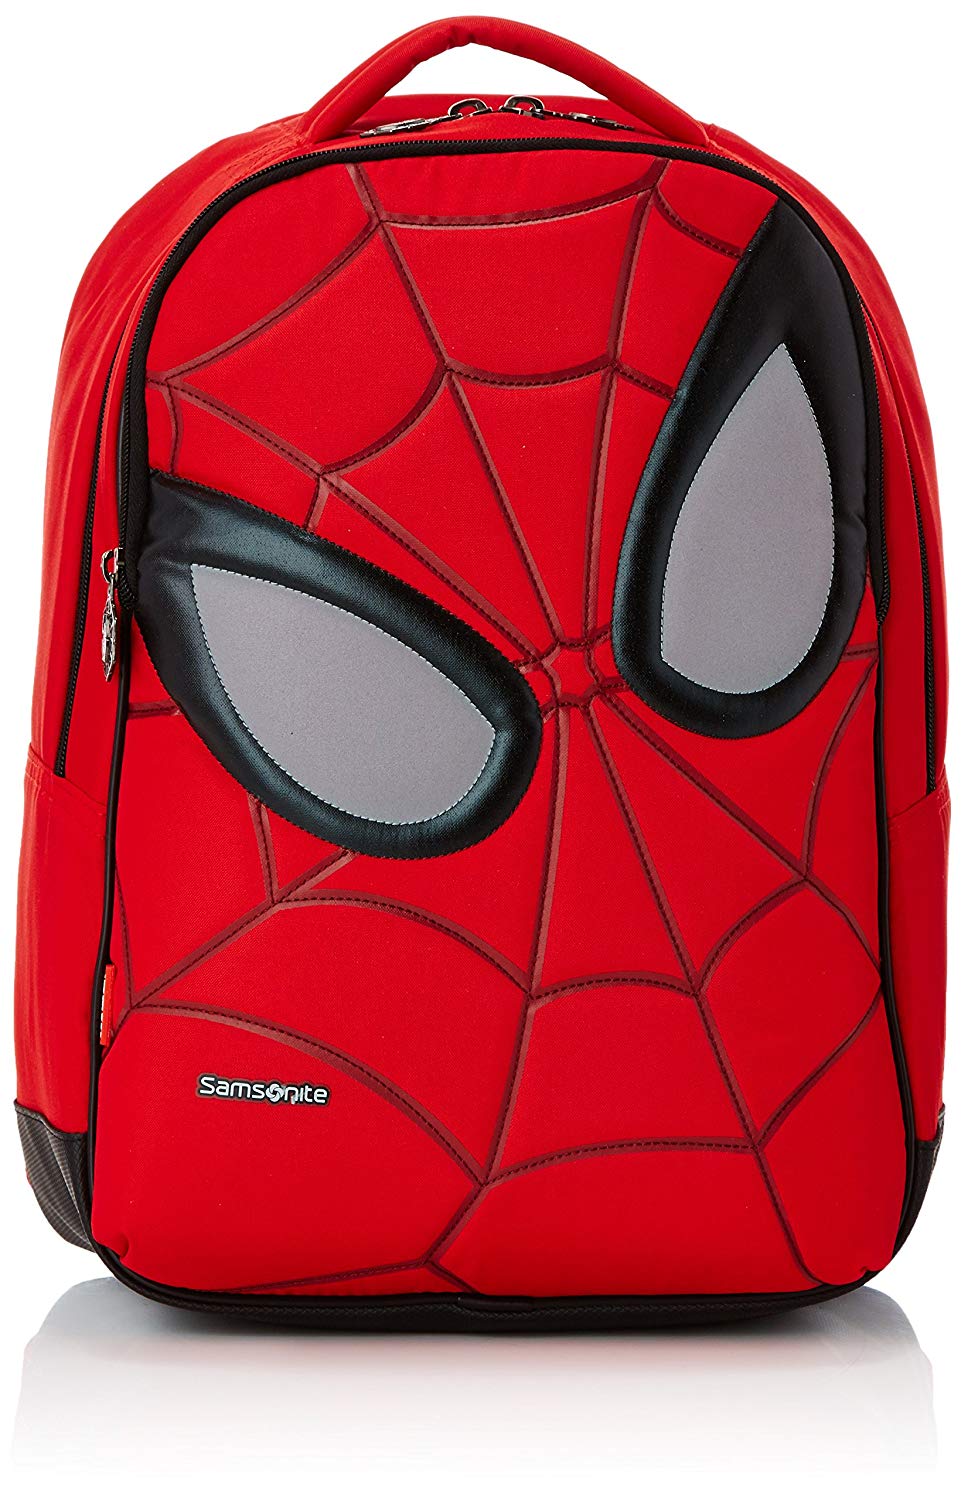 Samsonite Marvel by Samsonite Ultimate Spiderman Iconic School Backpack, 42 cm, 20 Liters Samsonite